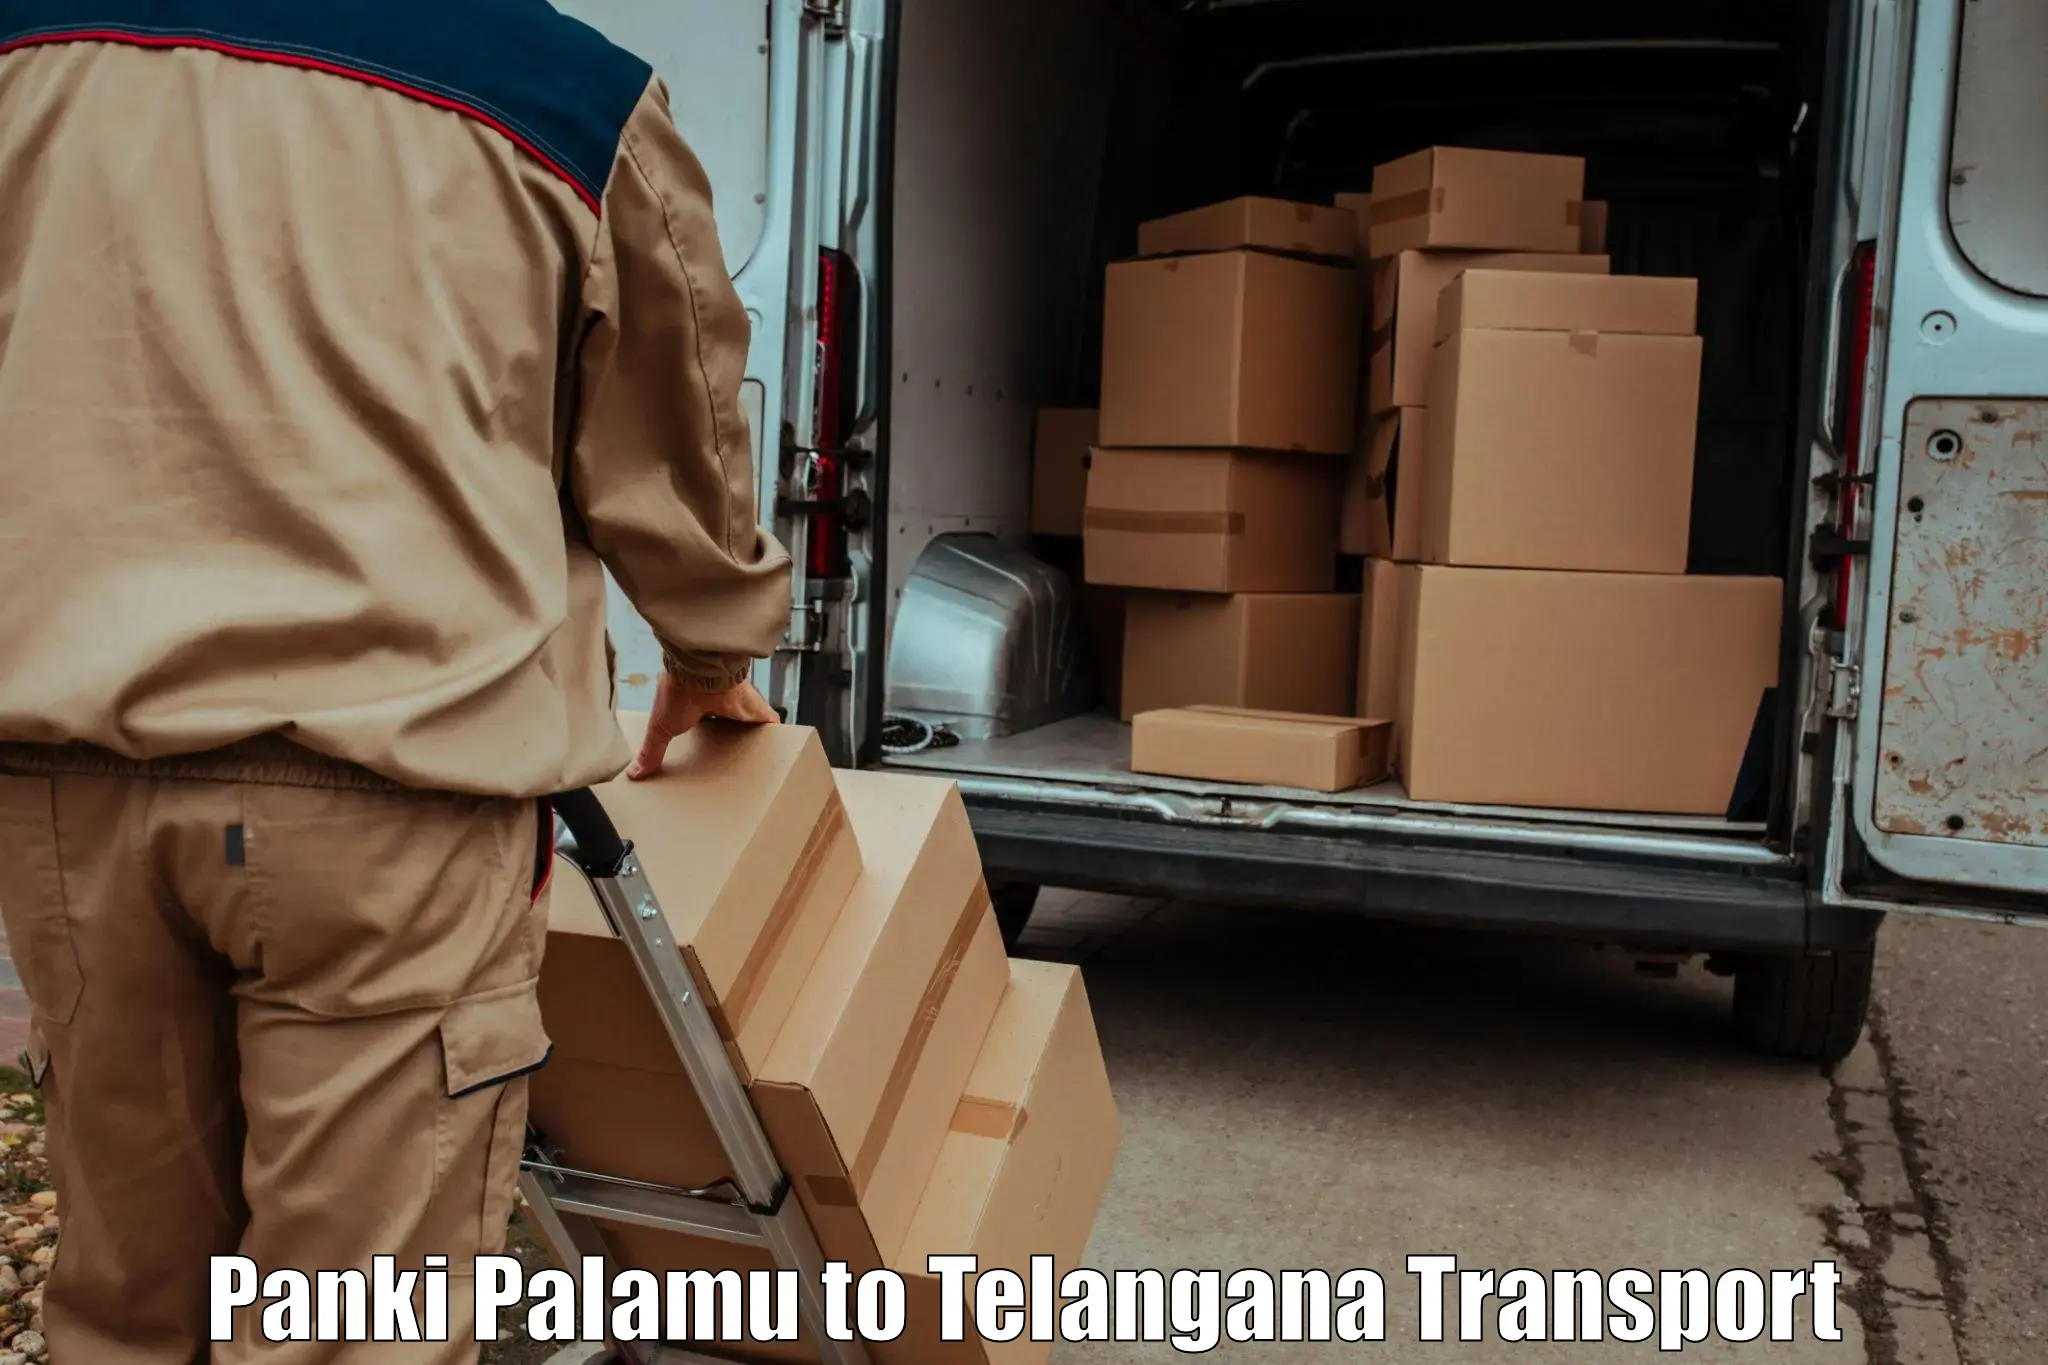 Shipping services Panki Palamu to Yellandu